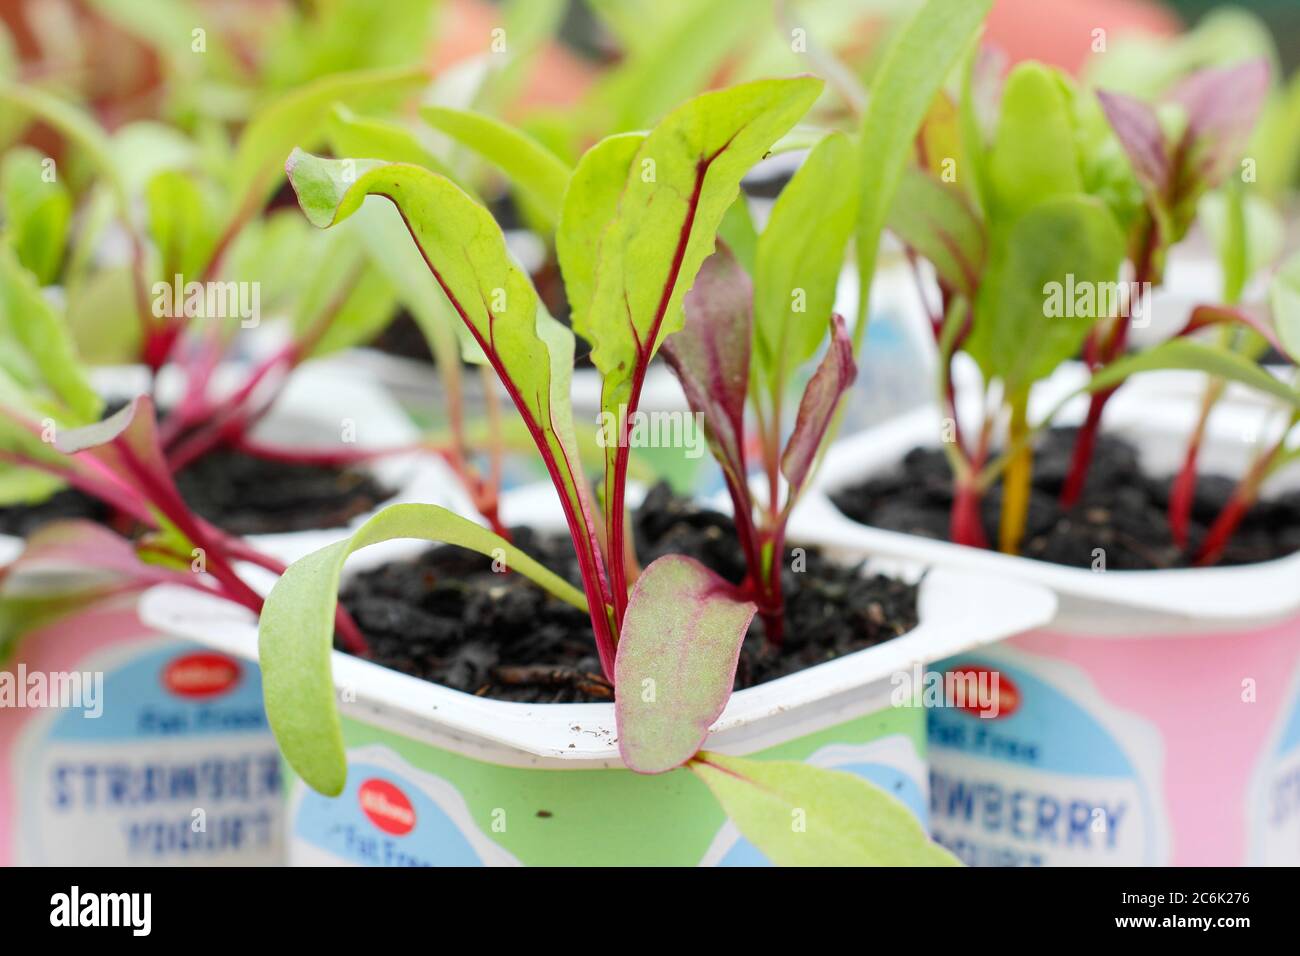 Semis de betteraves. Plantules de betteraves bêta vulgaris 'Rainbow Mixed' dans des pots de yaourt recyclés. ROYAUME-UNI Banque D'Images